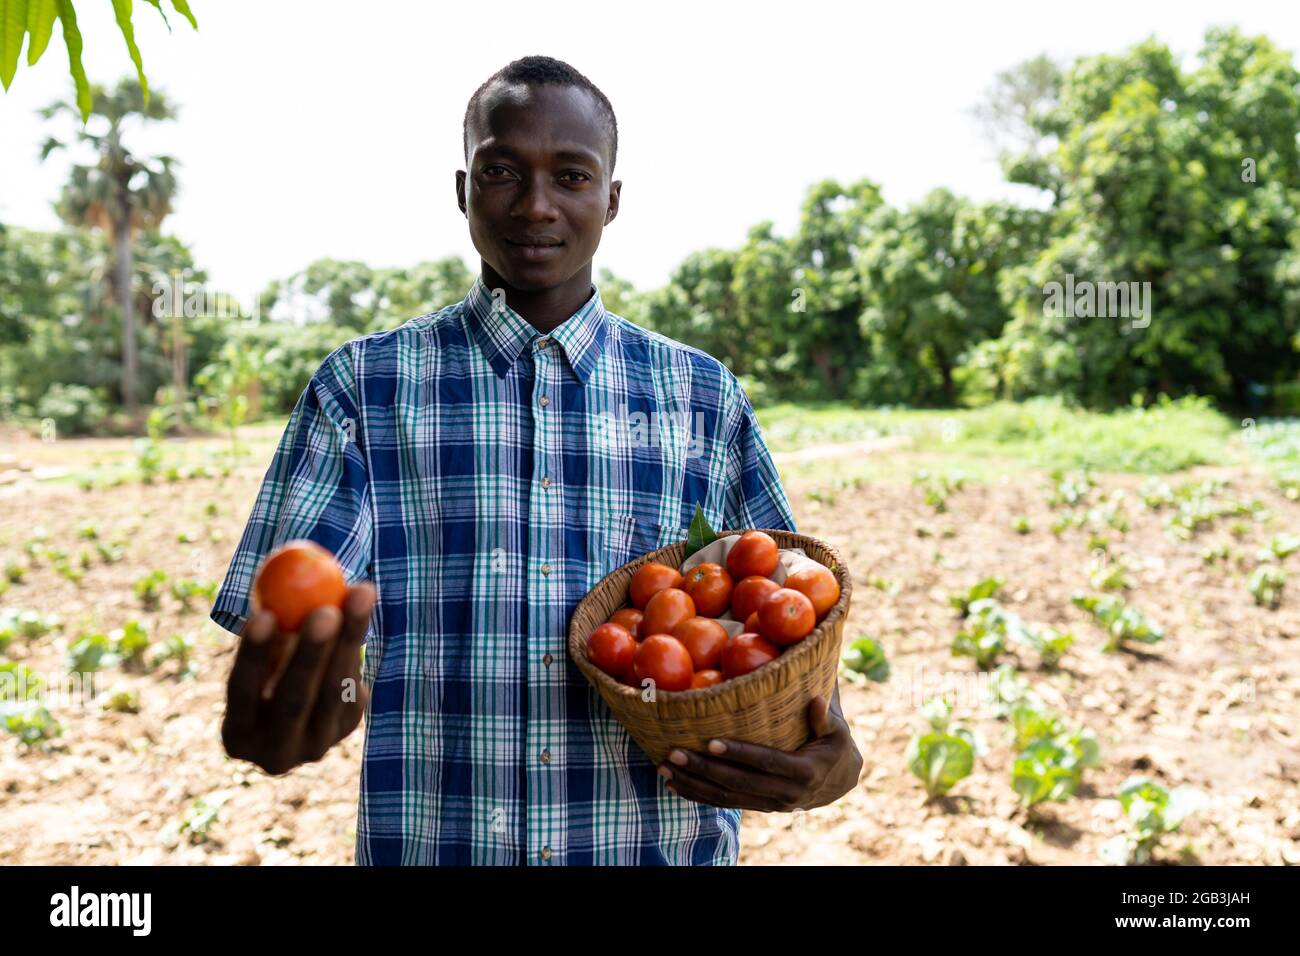 Dans cette image, un jeune agriculteur africain noir fier, dans une chemise à carreaux debout devant un champ, porte un panier de tomates fraîches Banque D'Images